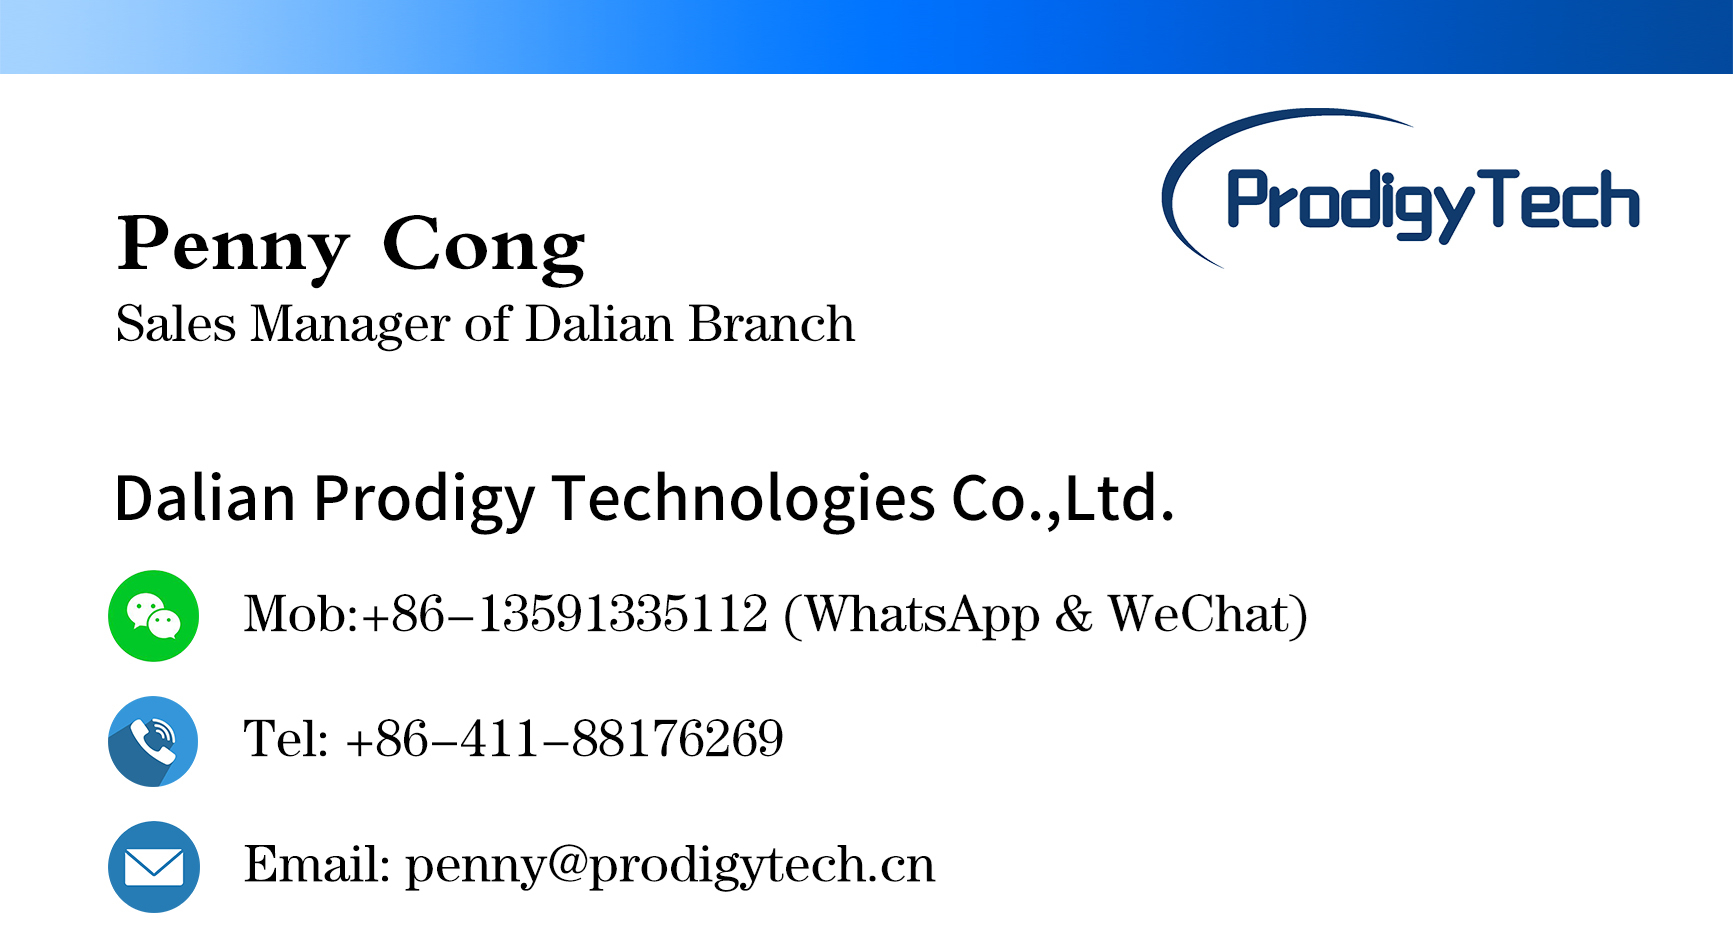 ProdigyTech Contact